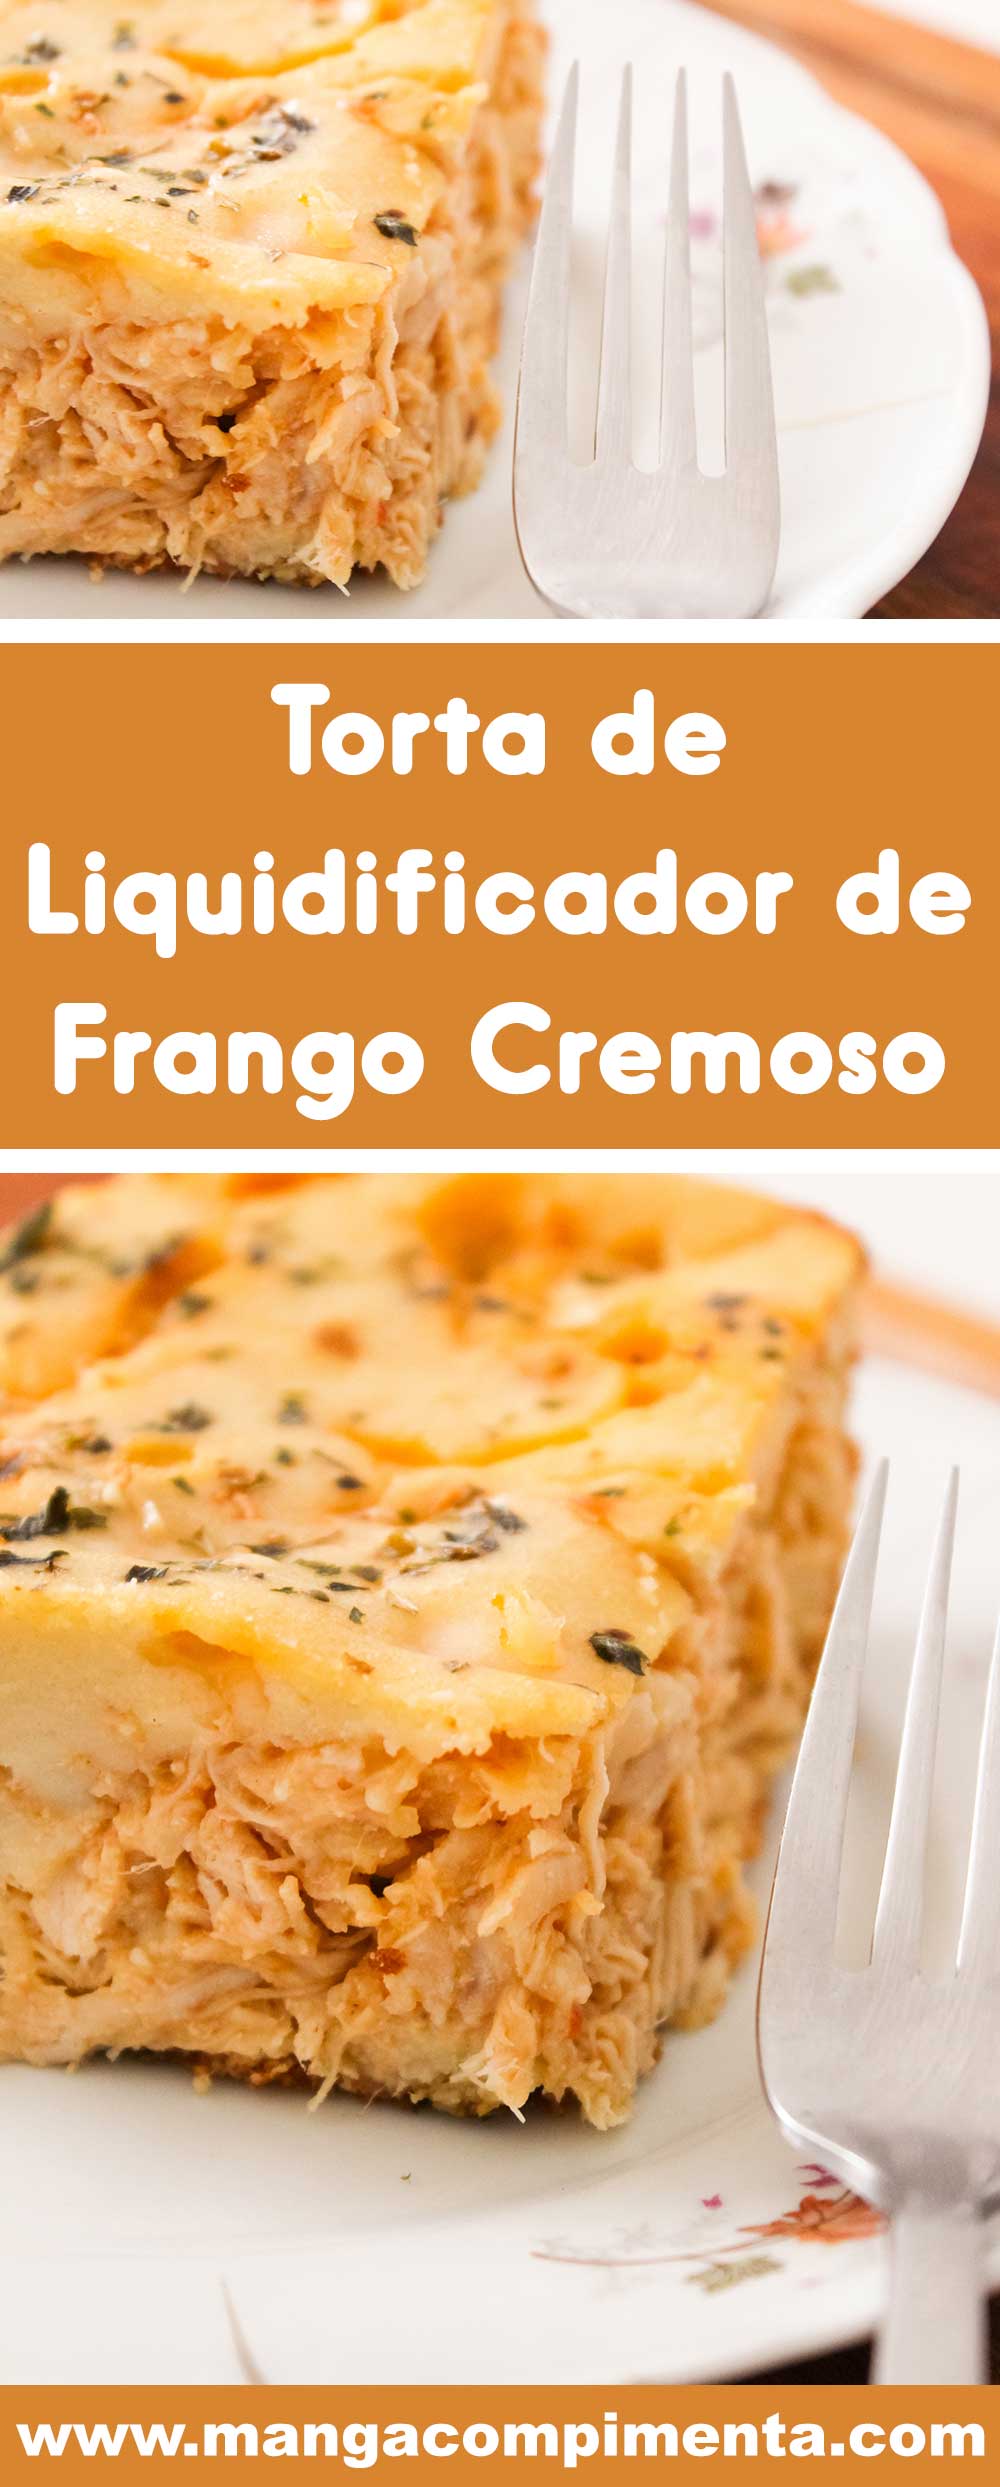 Receita de Torta de Liquidificador de Frango Cremoso - pode servir no almoço ou no lanche da tarde com as comadres.